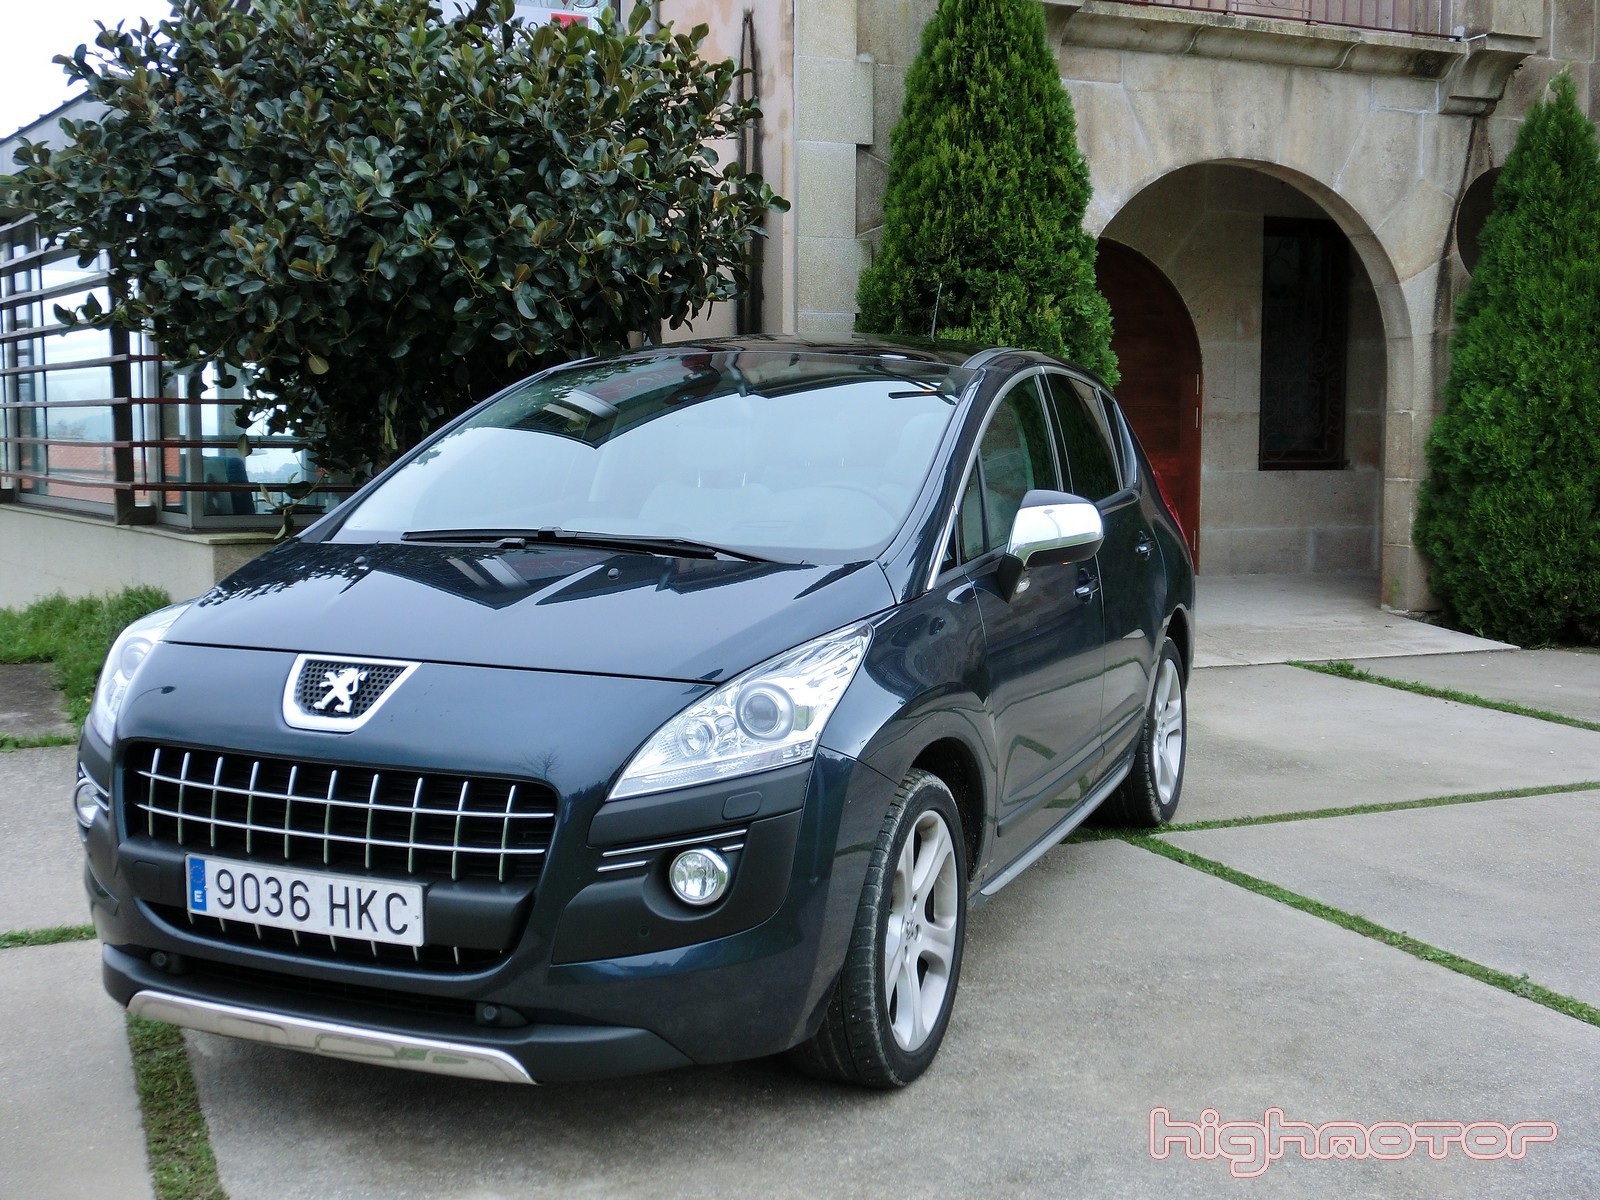 Peugeot 3008 2.0 HDi 163 CV Aut., prueba (Motor, comportamiento y consumo)